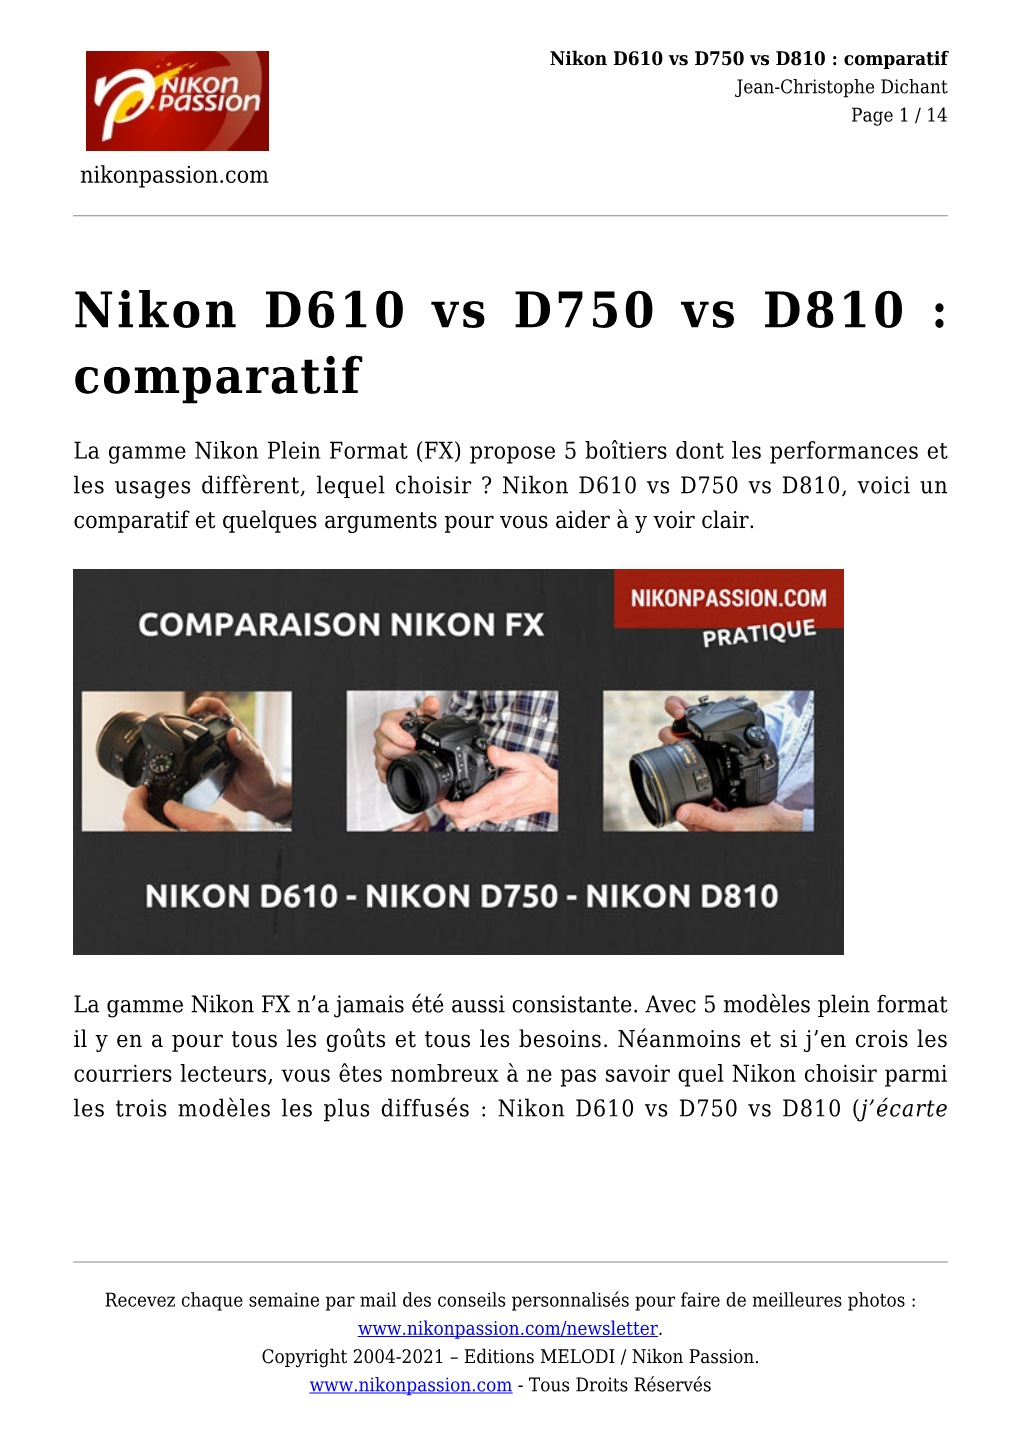 Nikon D610 Vs D750 Vs D810 : Comparatif Jean-Christophe Dichant Page 1 / 14